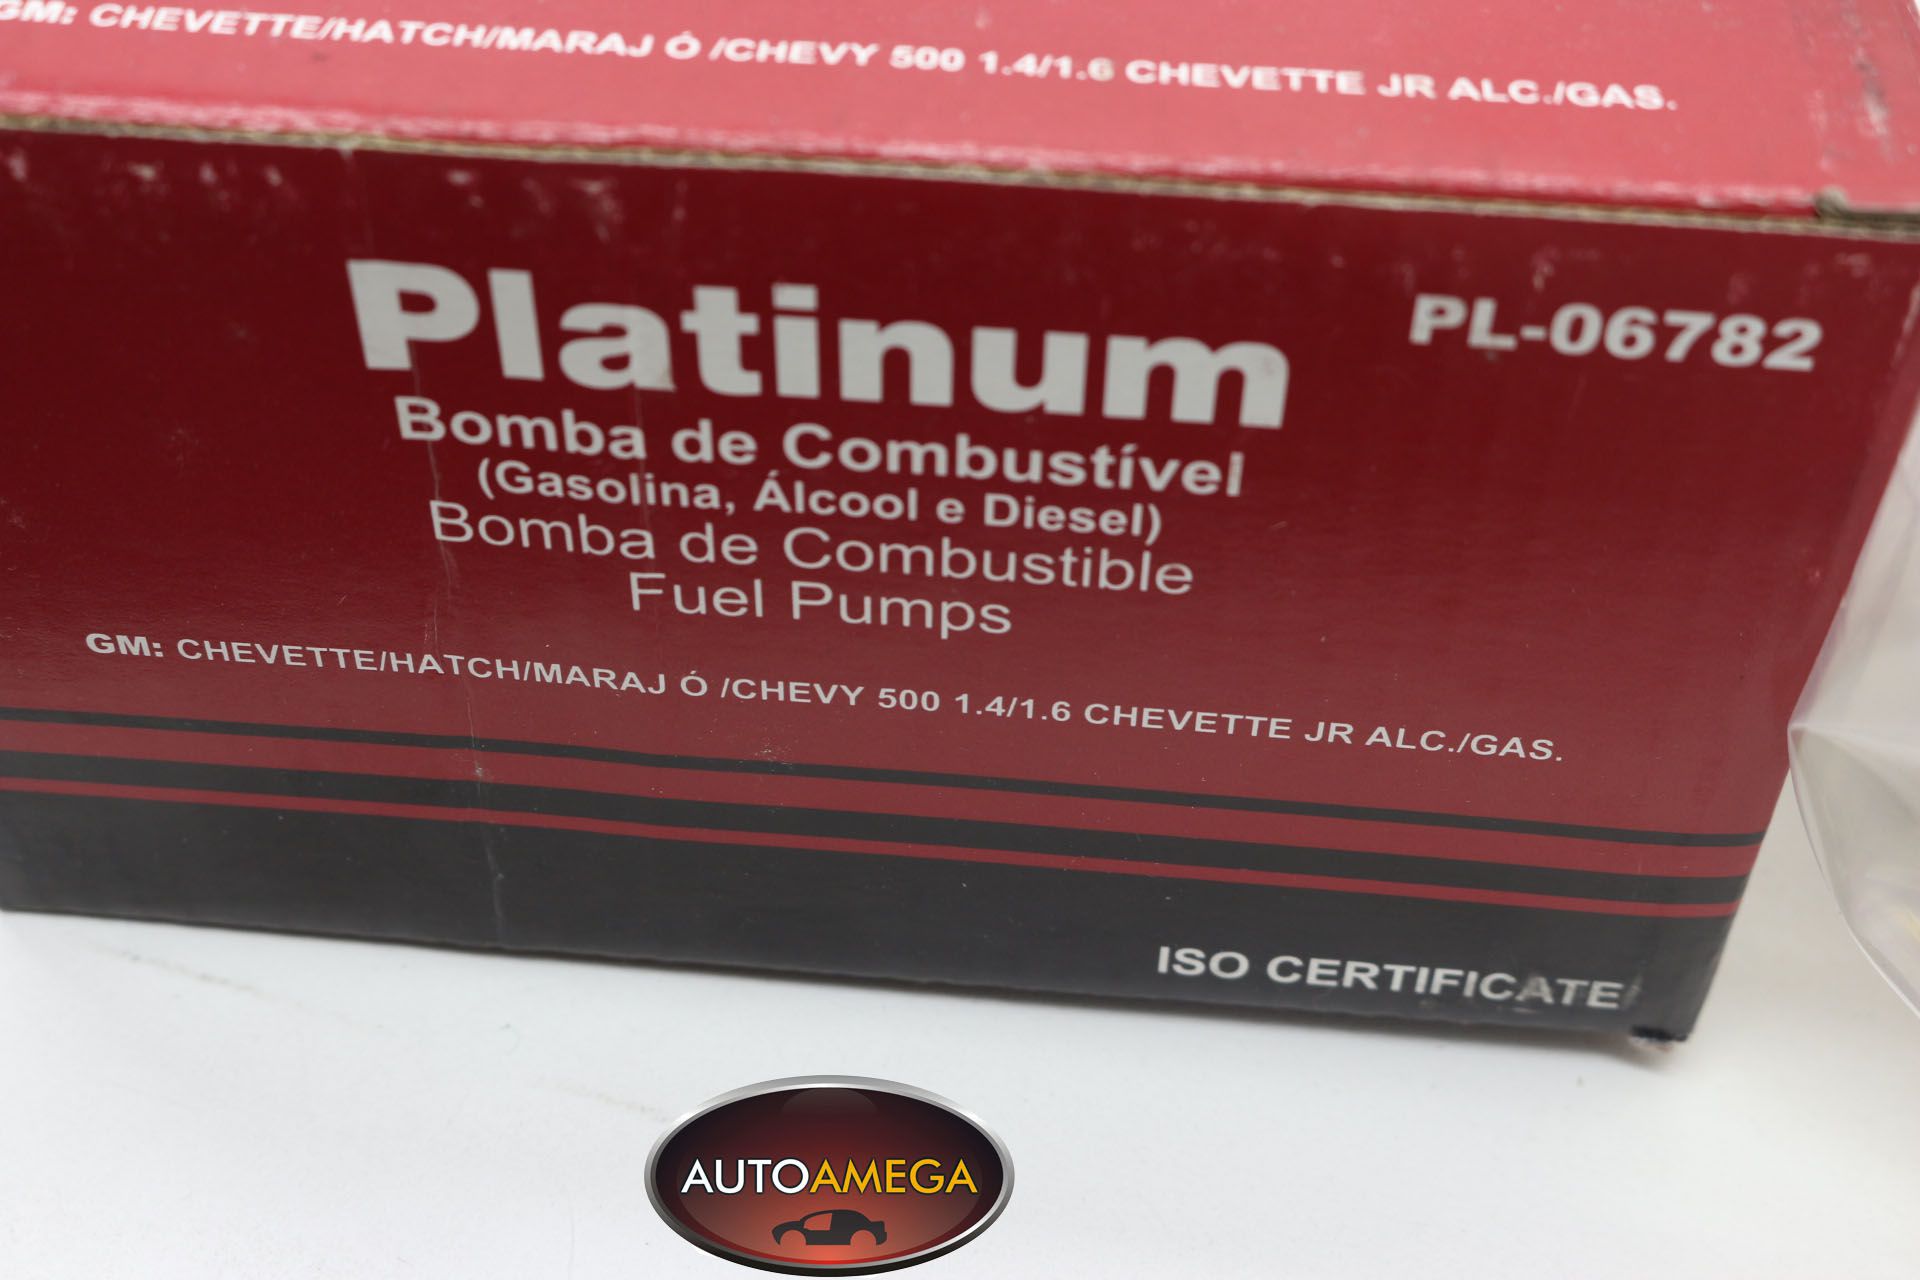 Bomba Combustivel Gm Chevette, Gm Marajó, Gm Chevy, produto novo marca Platinum, qualidade Original.